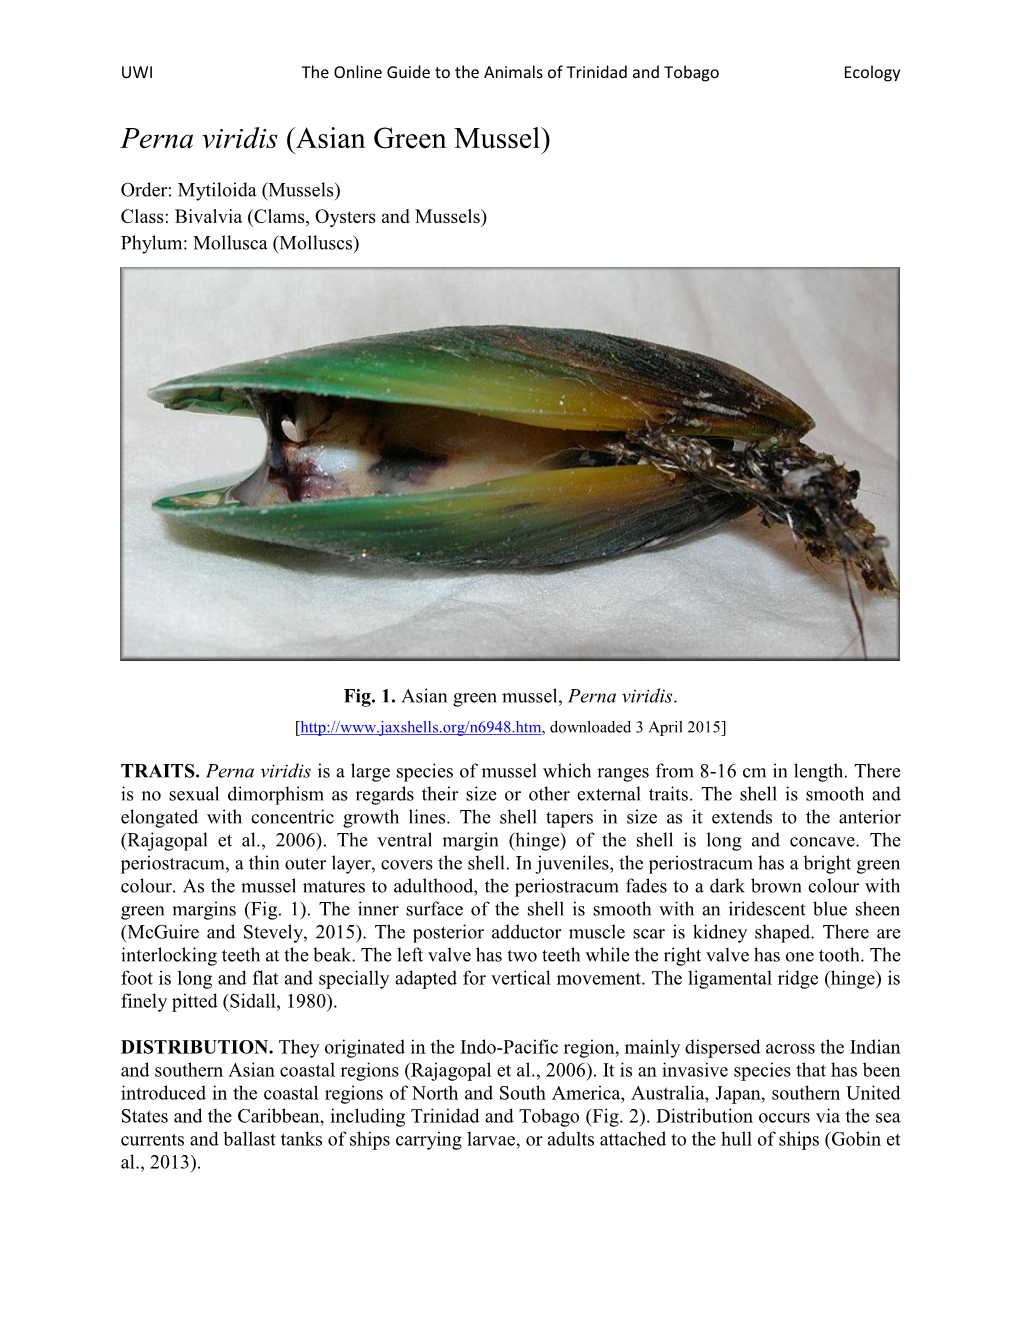 Perna Viridis (Asian Green Mussel)